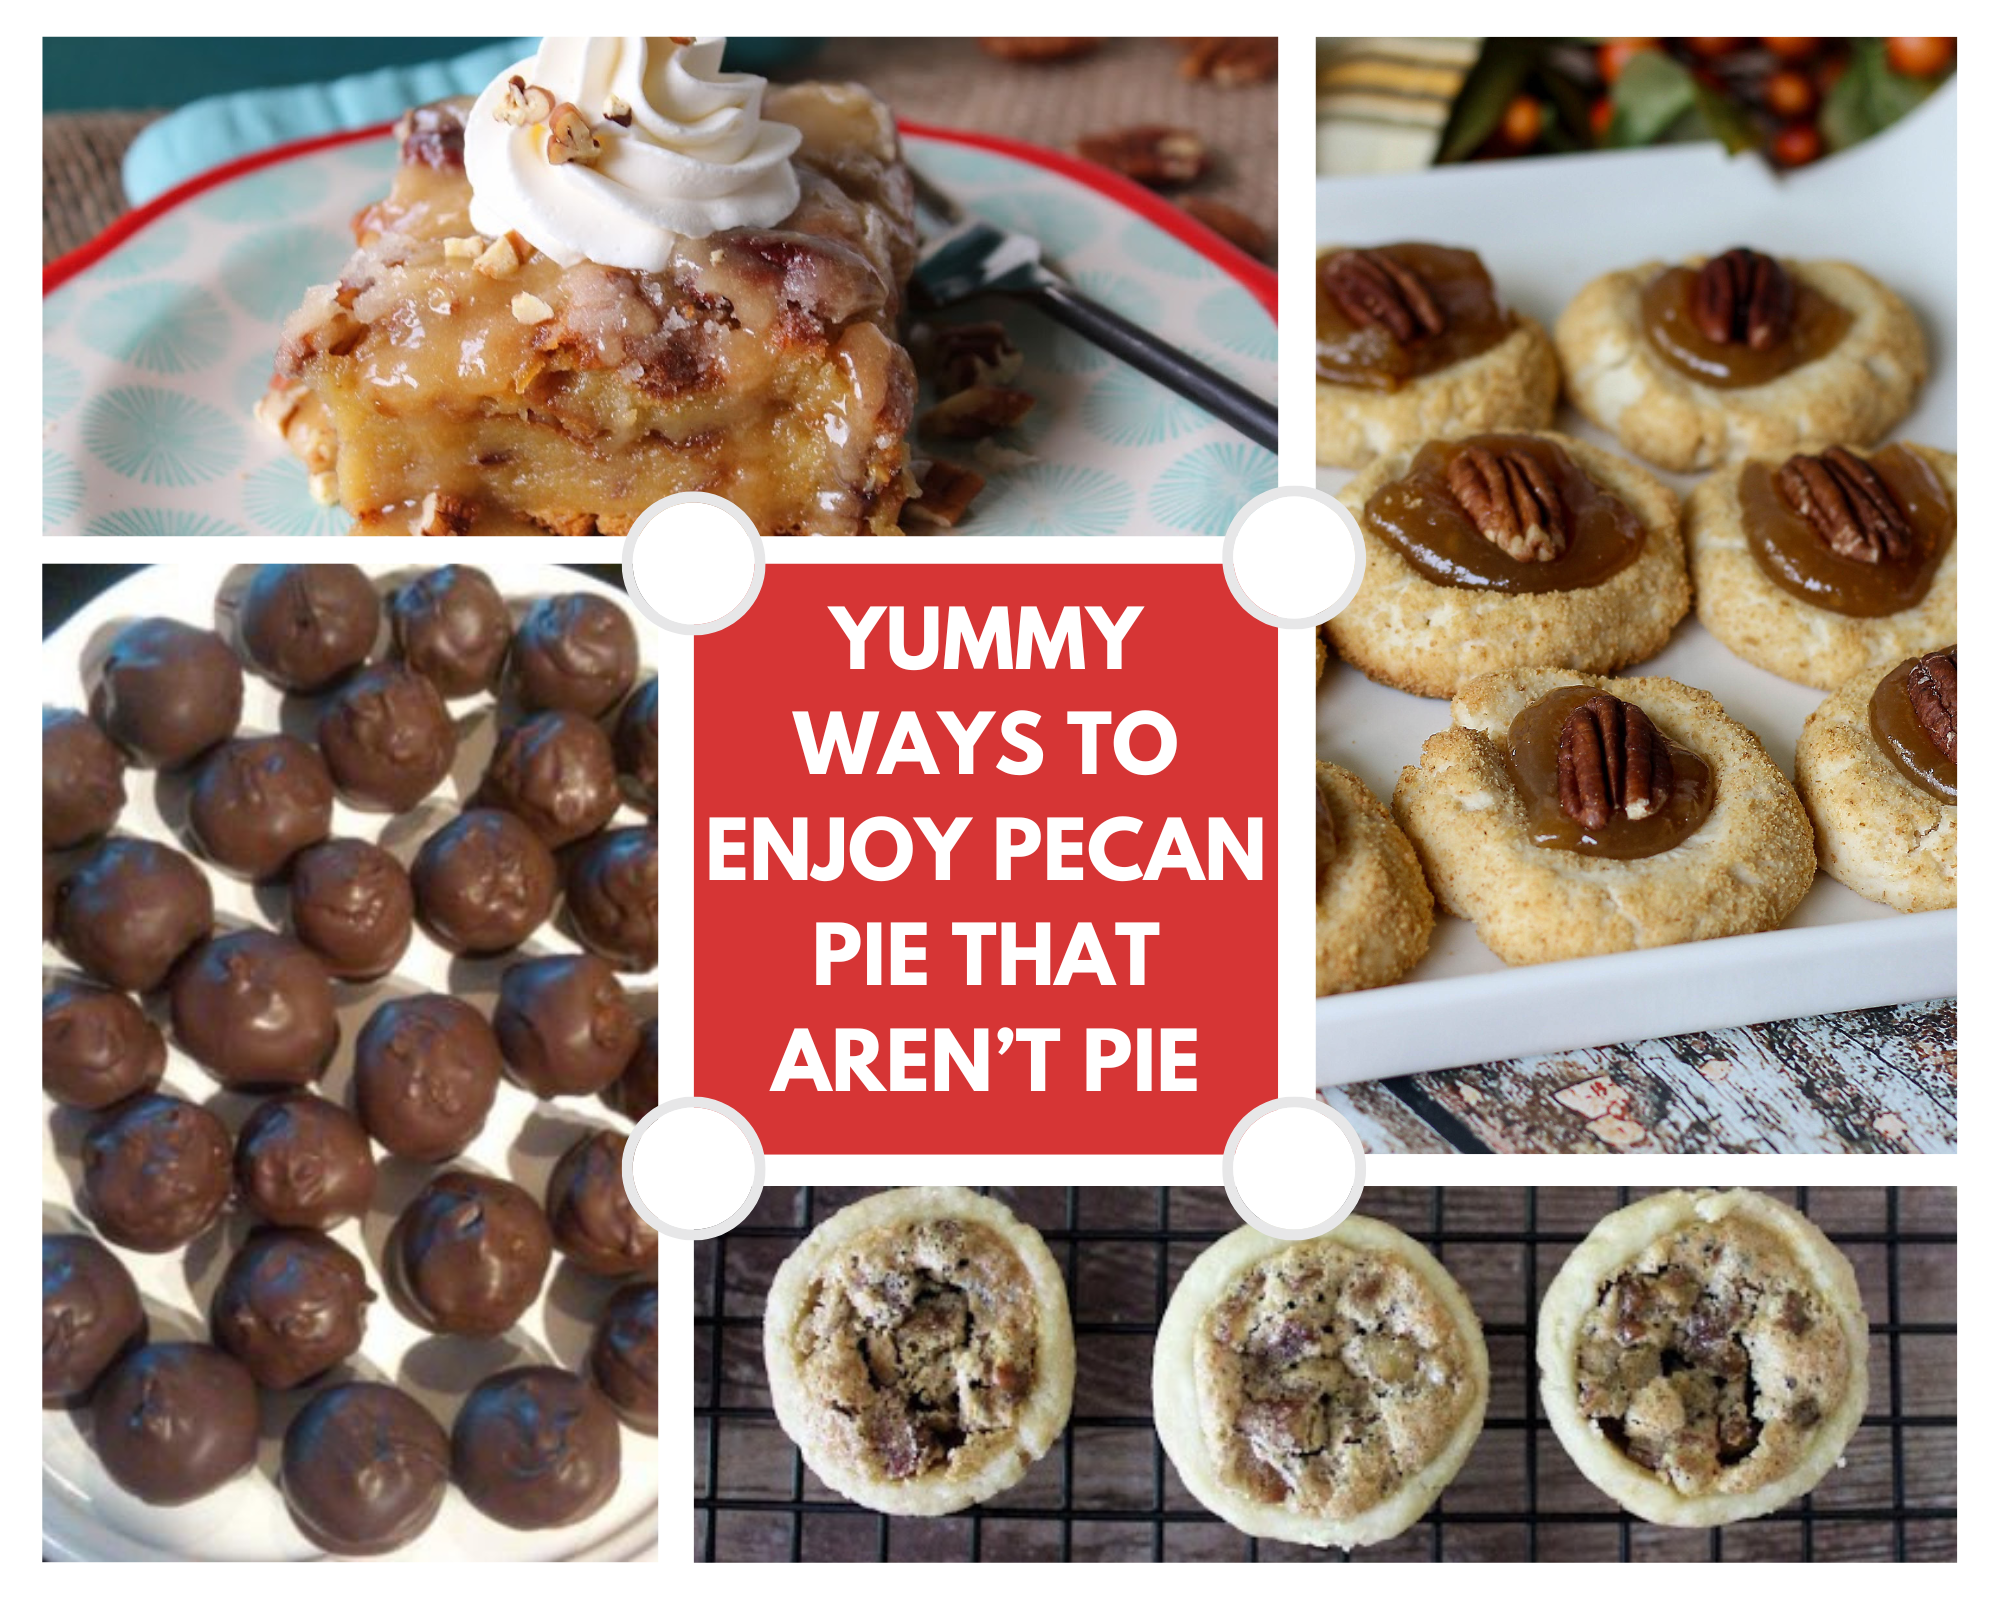 Yummy Ways to Enjoy Pecan Pie that Aren’t Pie